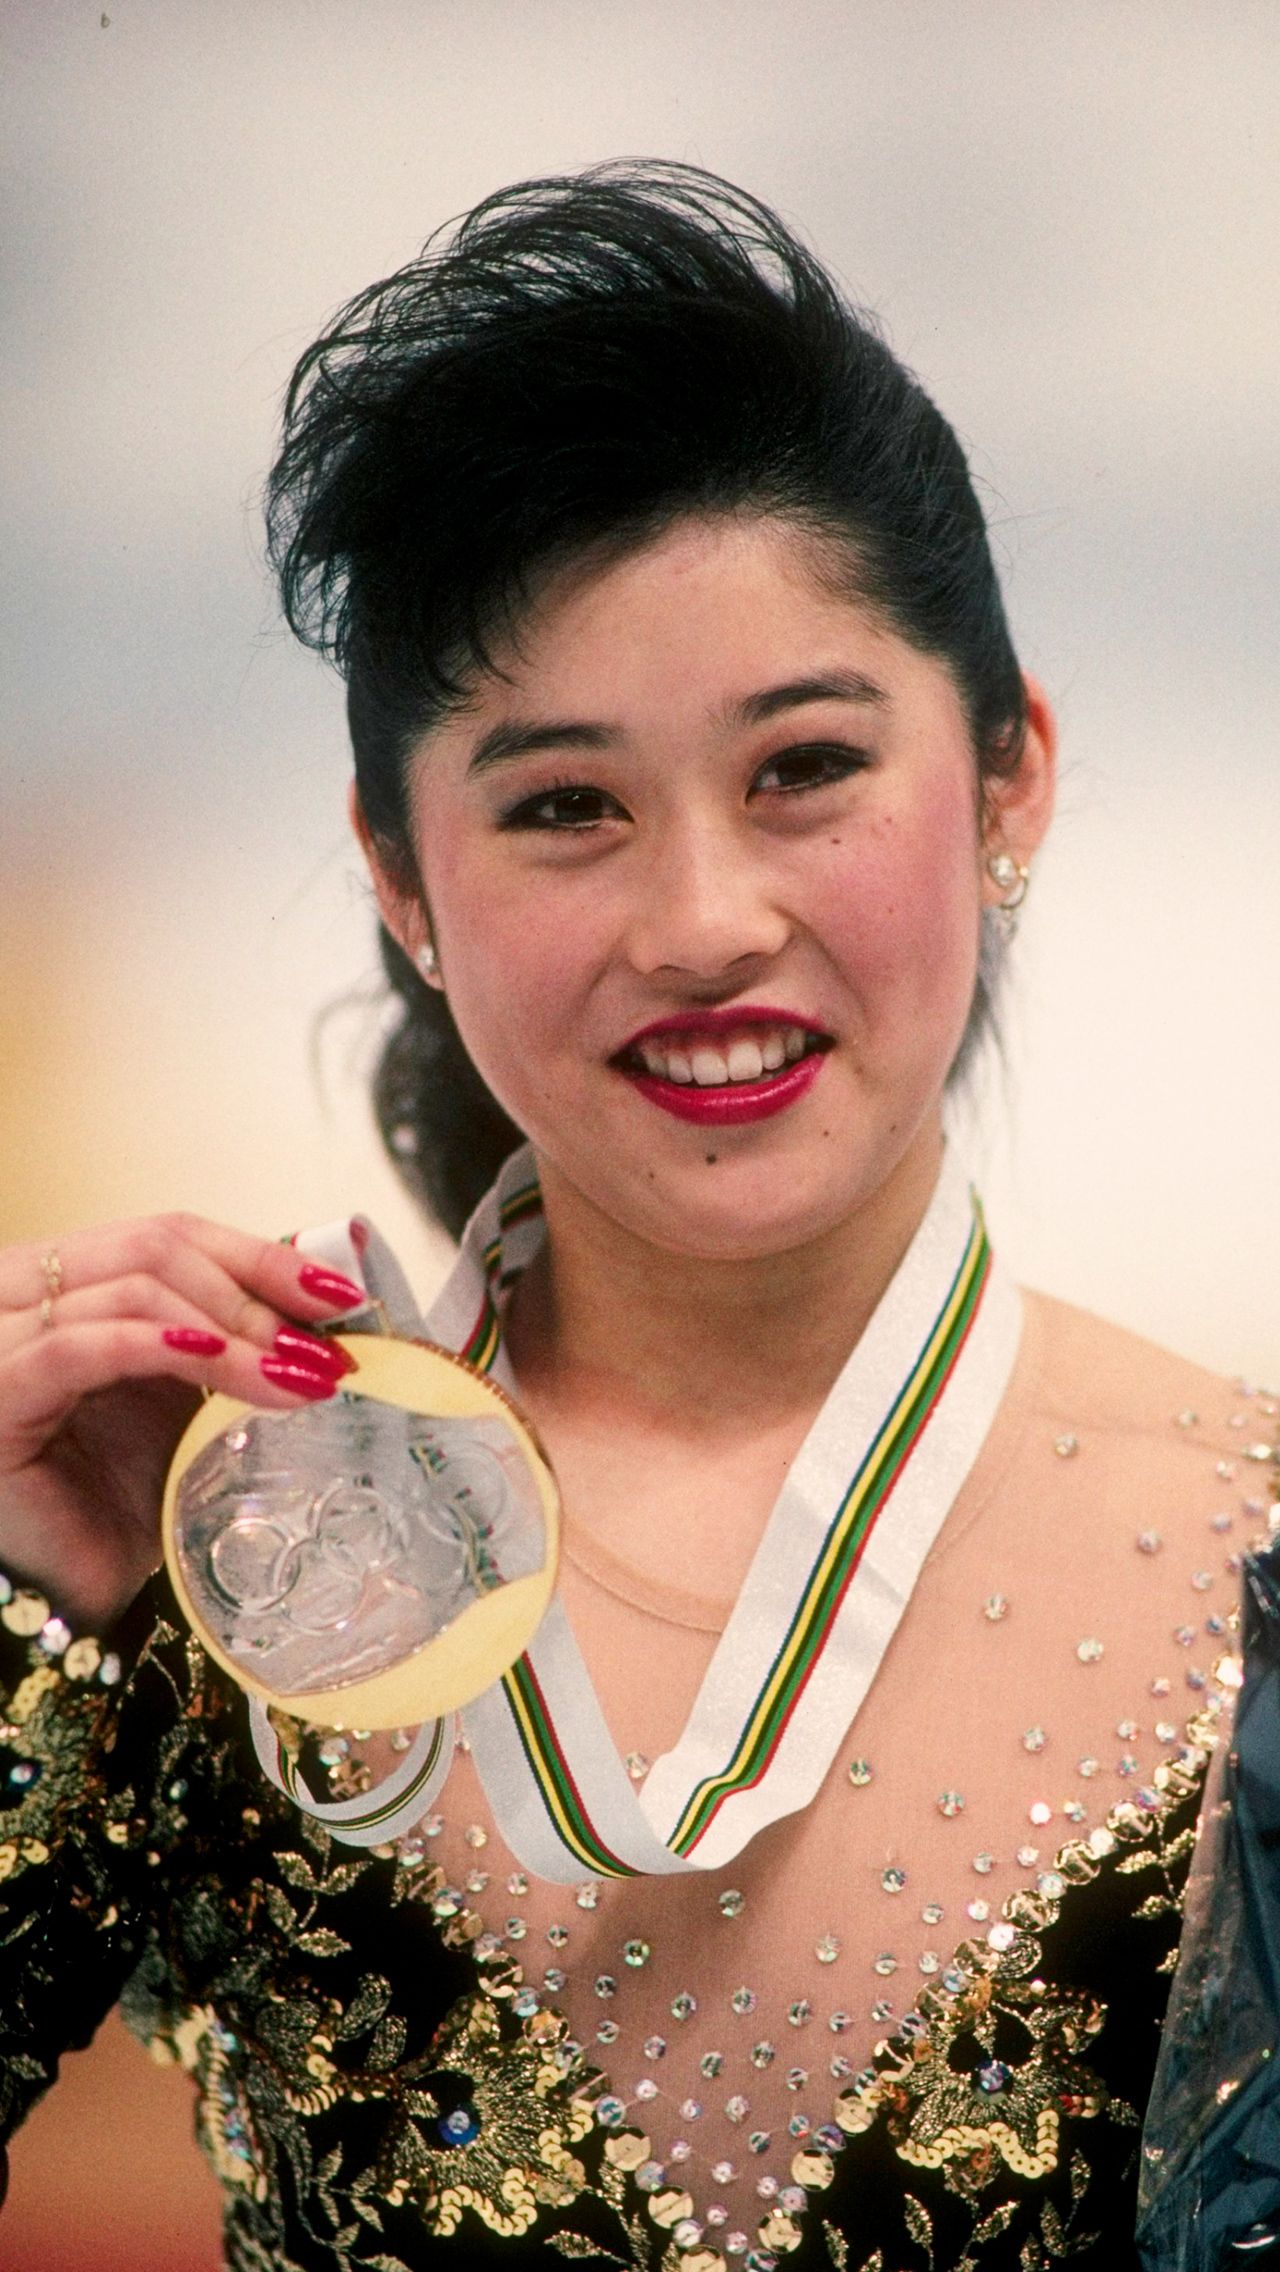 Затем Кристи всё же сосредоточилась на одиночном катании и достигла невероятных высот. В 1992 году она взяла золото Олимпиады в Альбервиле.